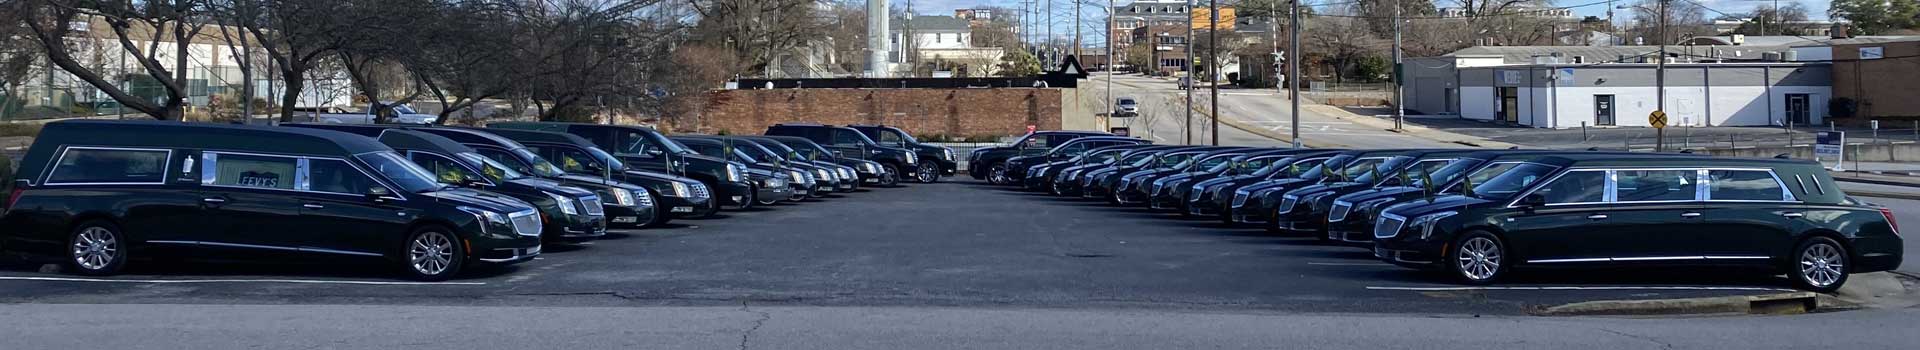 Leevy's Funeral Home vehicle fleet